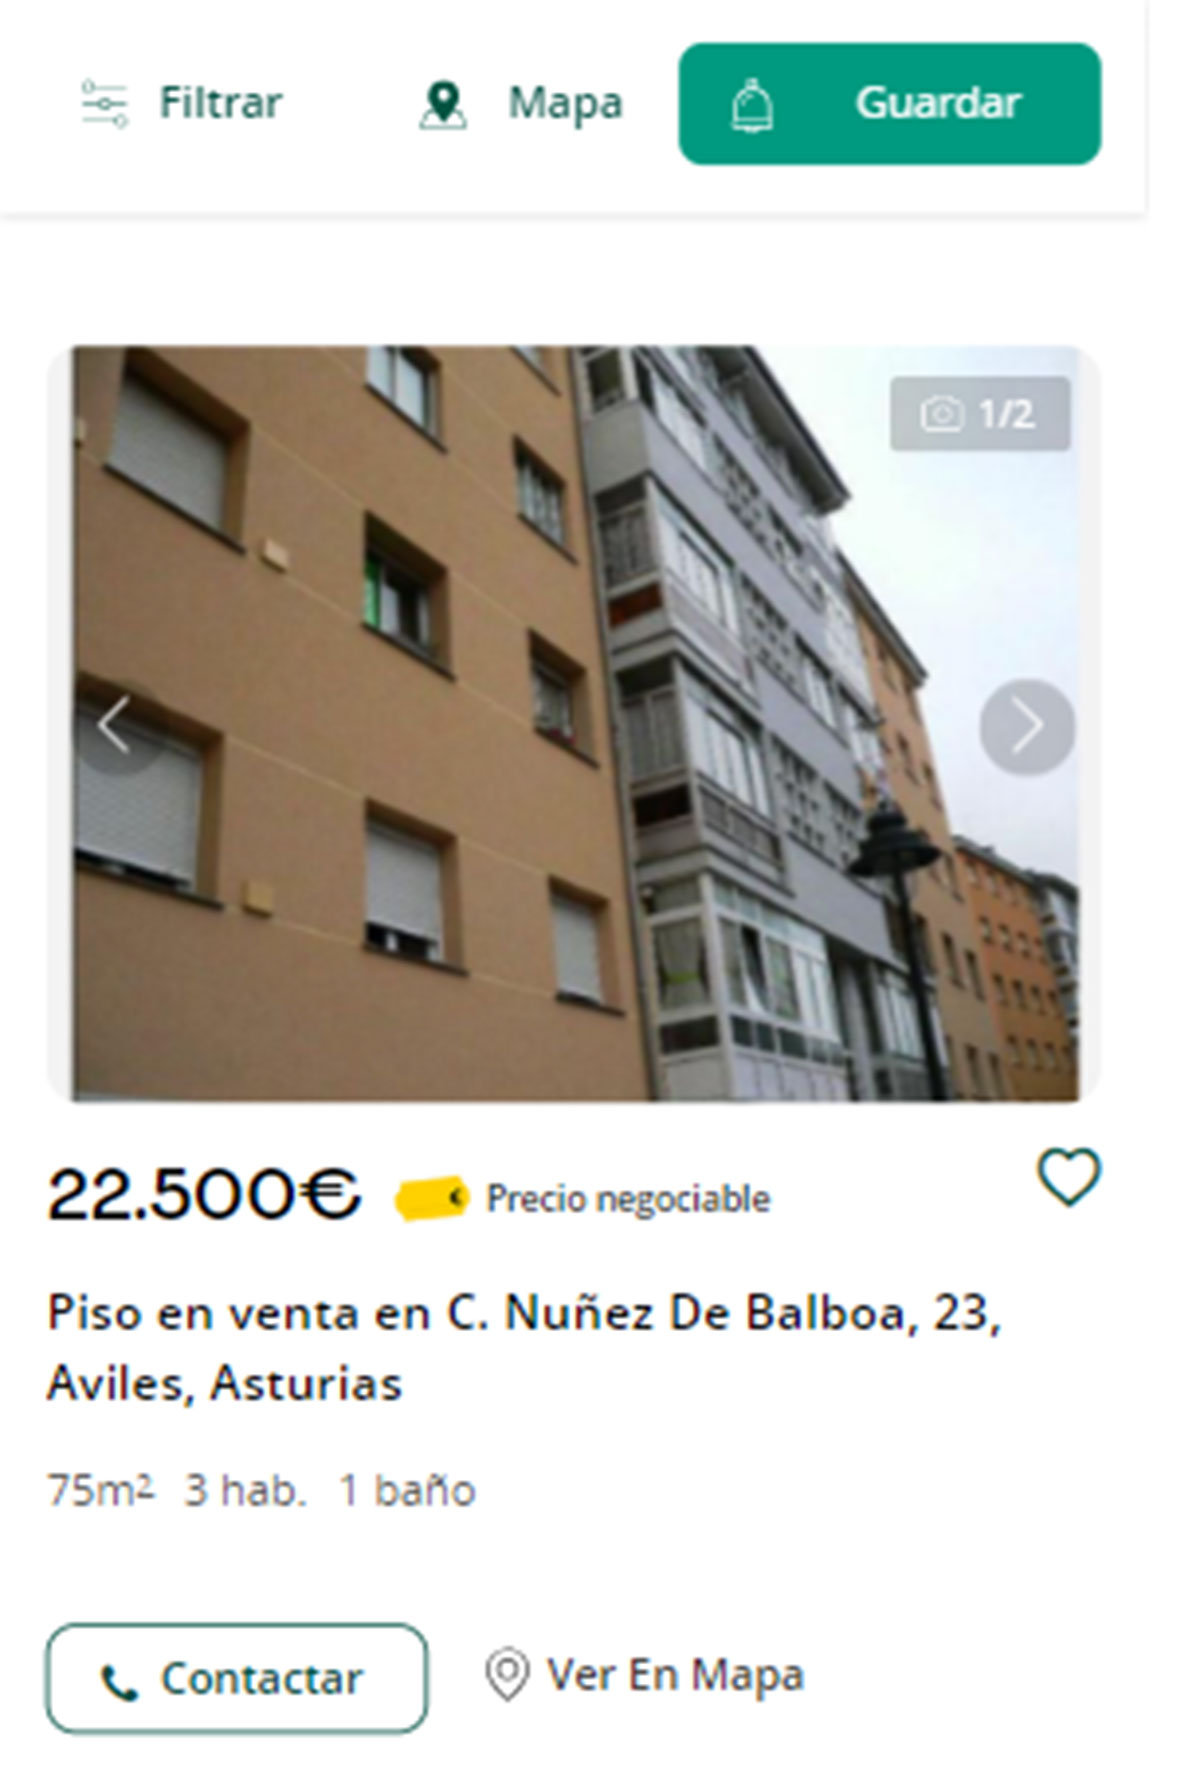 Piso en Asturias por 22.500 euros